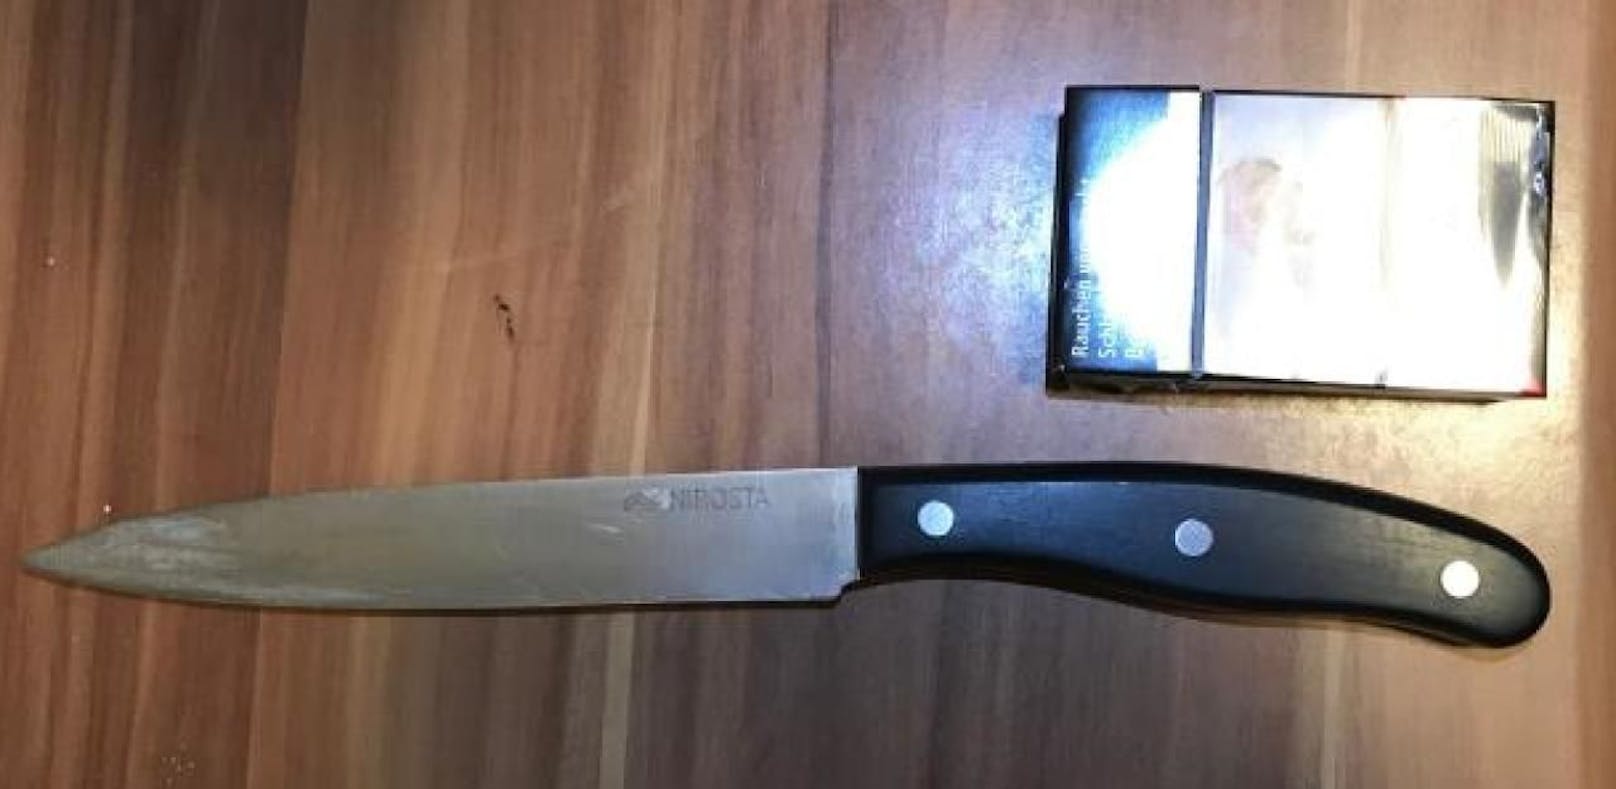 Dieses Messer wurde beim 31-Jährigen sichergestellt.